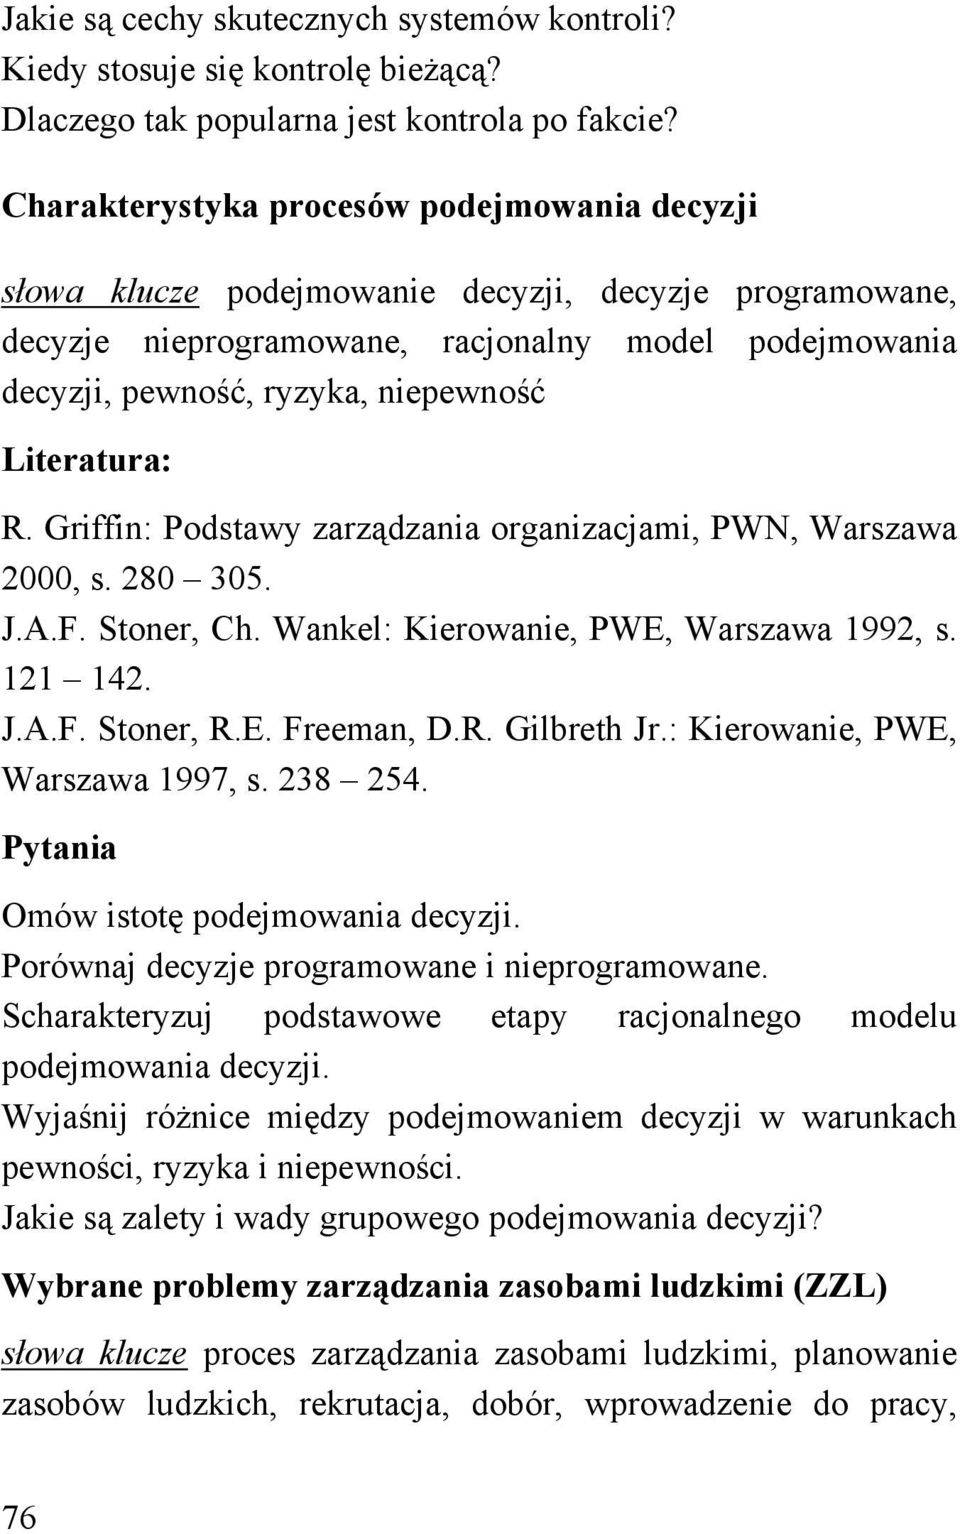 Literatura: R. Griffin: Podstawy zarządzania organizacjami, PWN, Warszawa 2000, s. 280 305. J.A.F. Stoner, Ch. Wankel: Kierowanie, PWE, Warszawa 1992, s. 121 142. J.A.F. Stoner, R.E. Freeman, D.R. Gilbreth Jr.